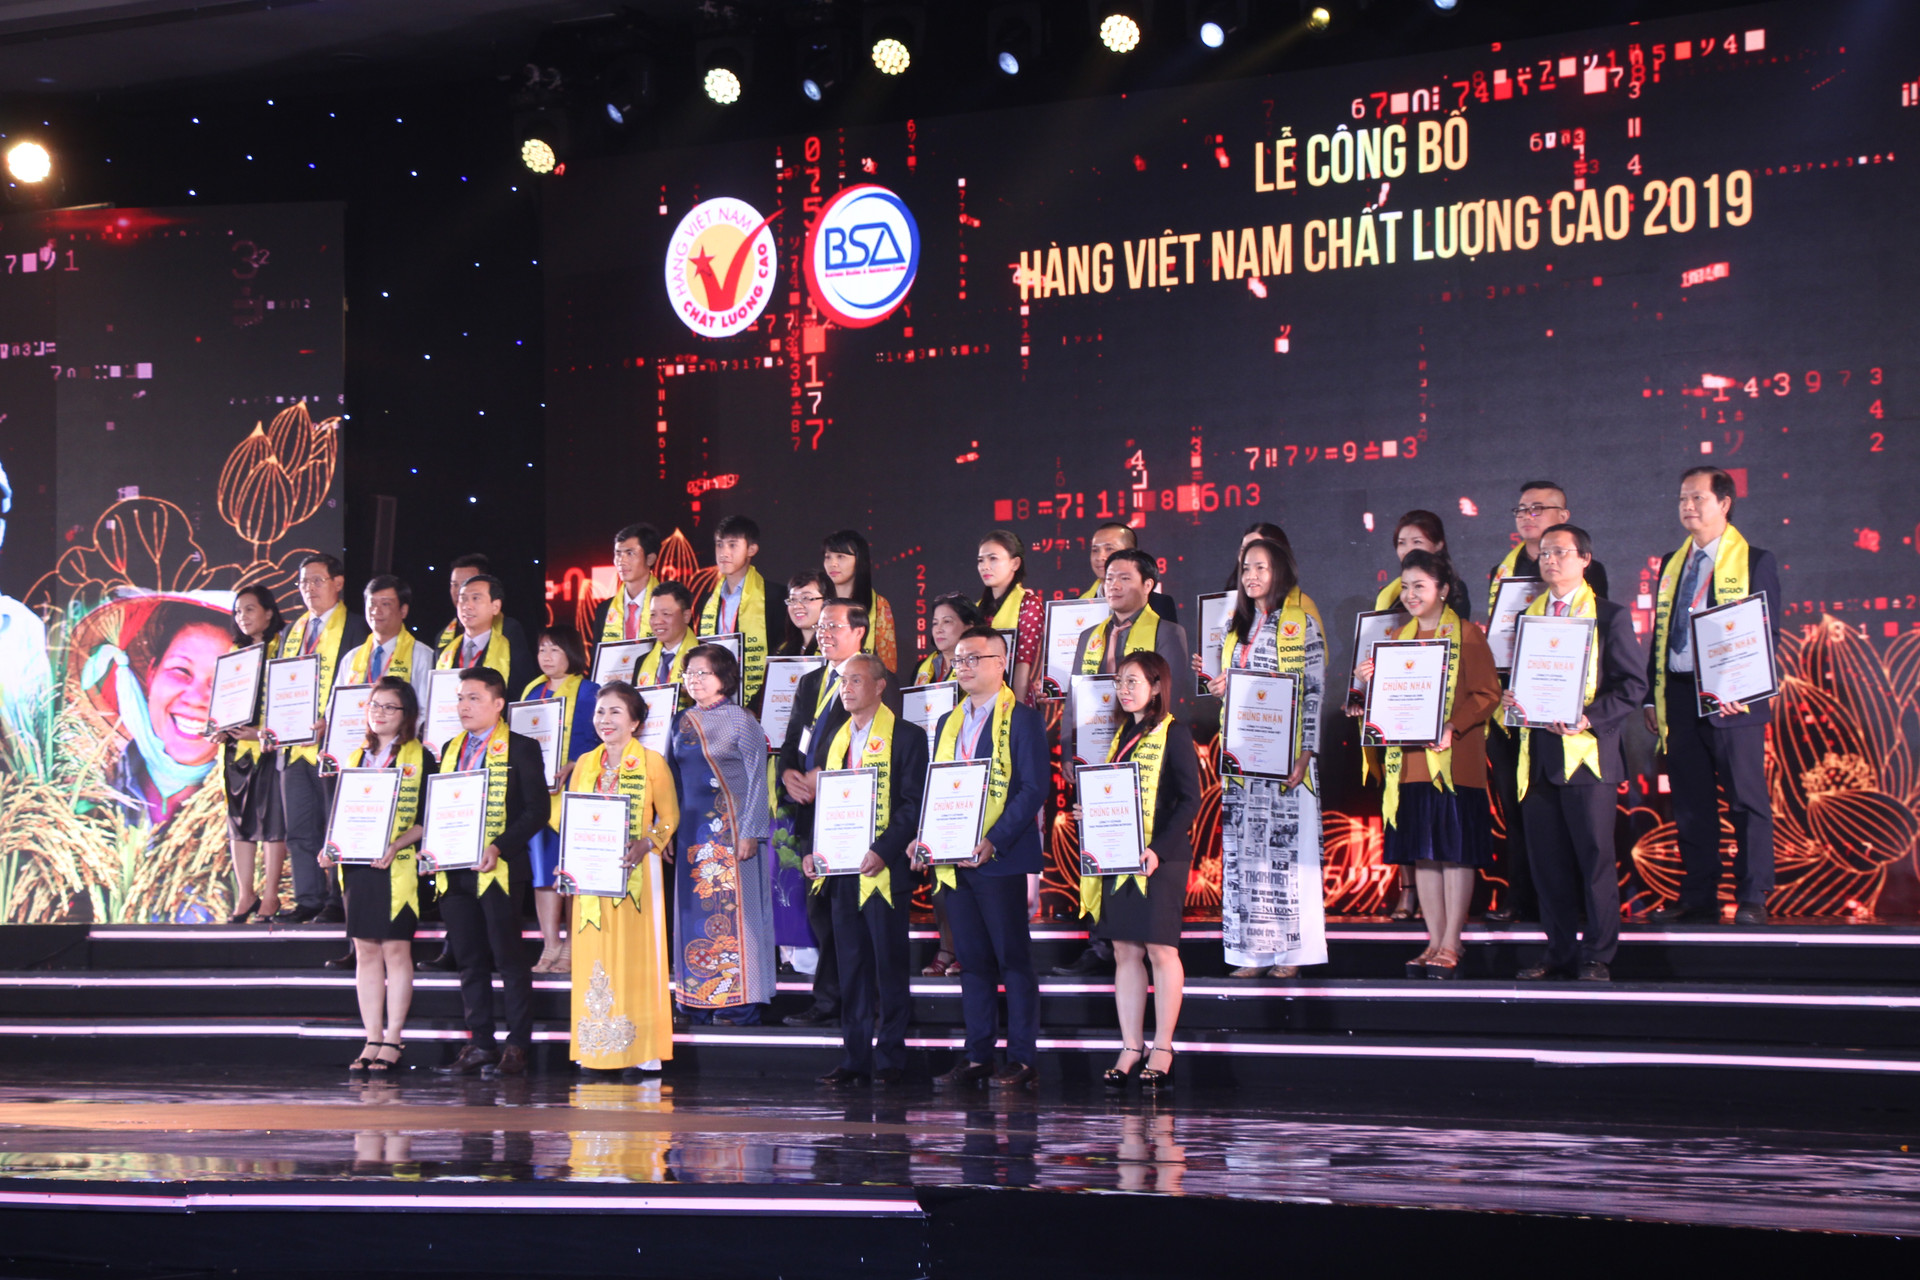 Trao chứng nhận cho 542 doanh nghiệp Hàng Việt Nam chất lượng cao